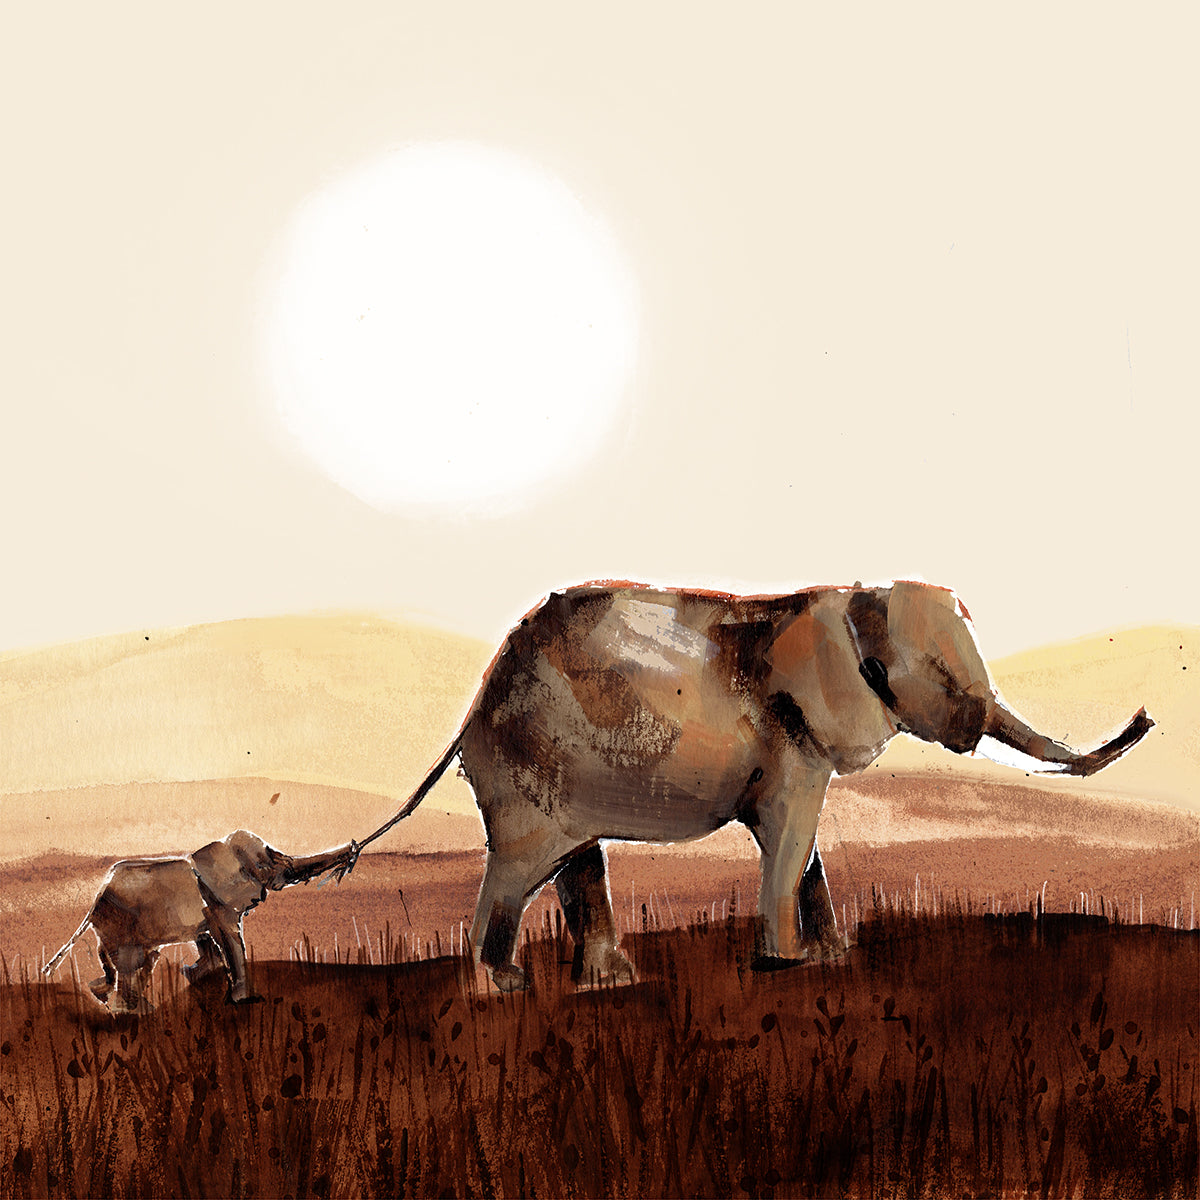 Mum and Baby Elephant illustration at Sunset